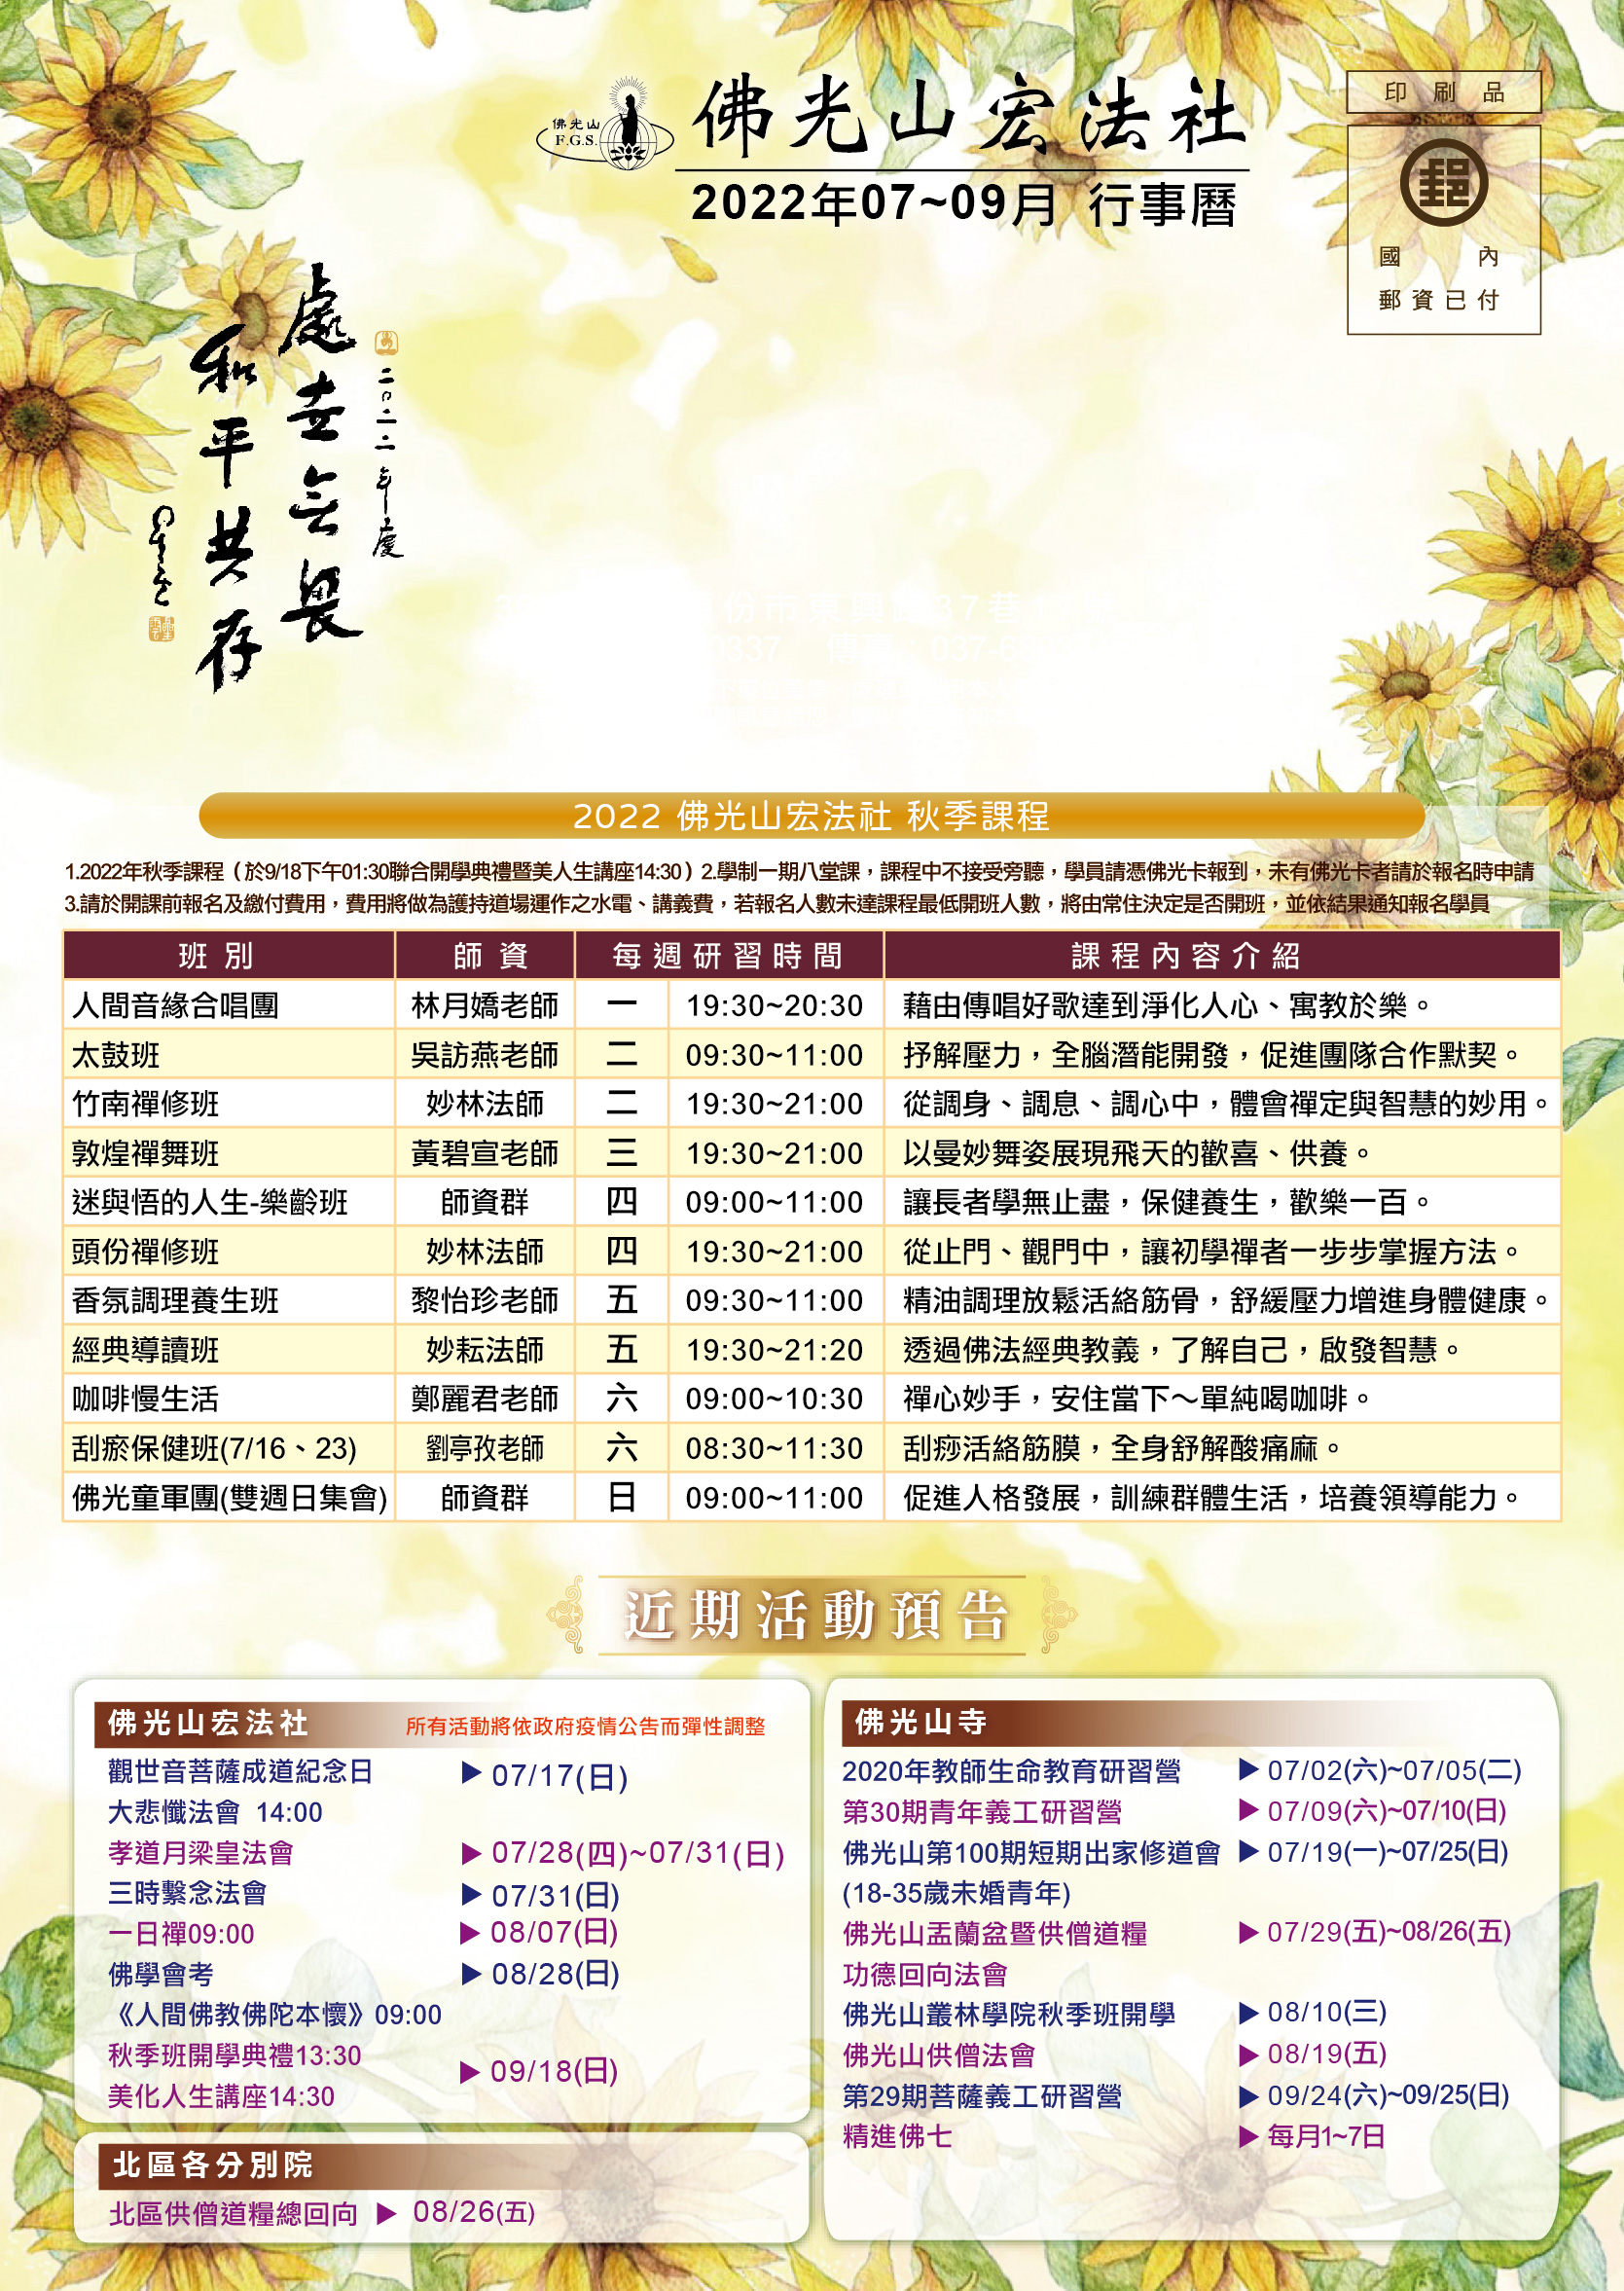 宏法社-2022年07~09月行事曆.jpg